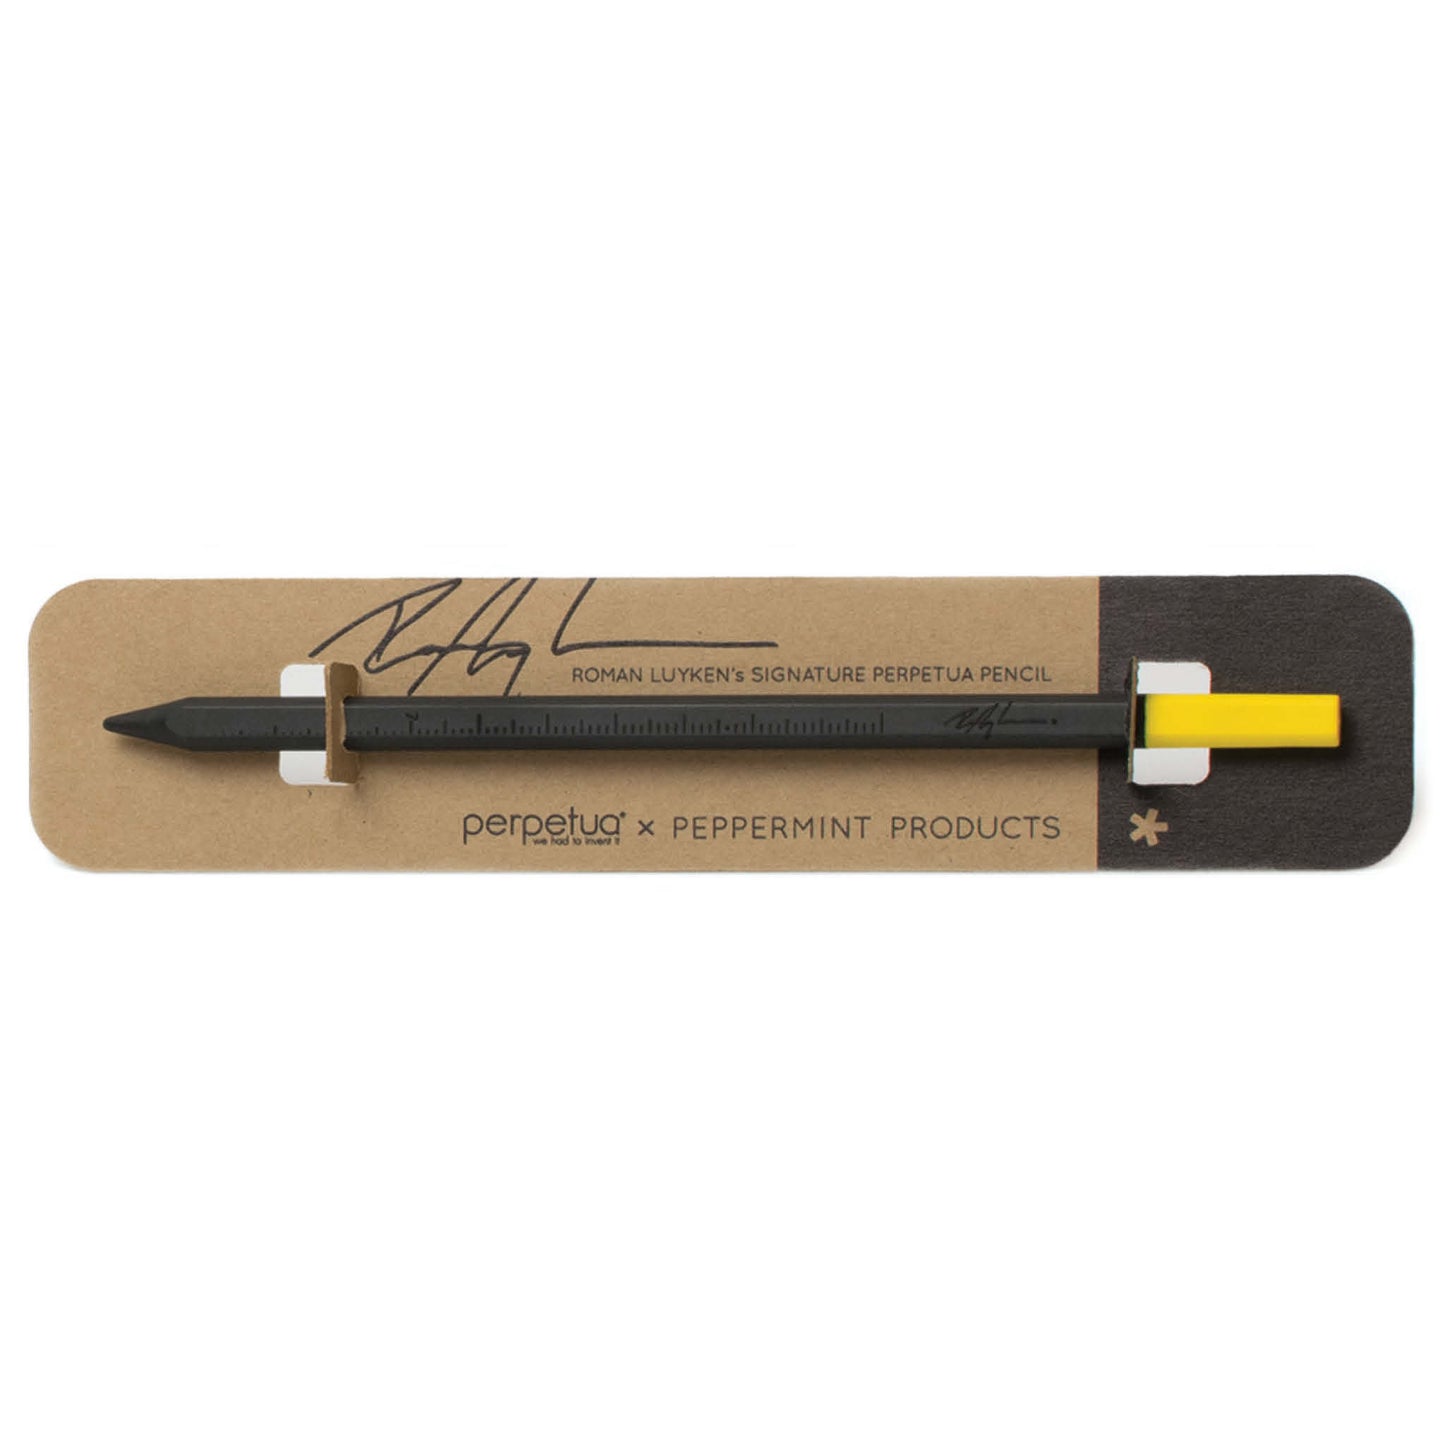 Signature Perpetua | Bleistift